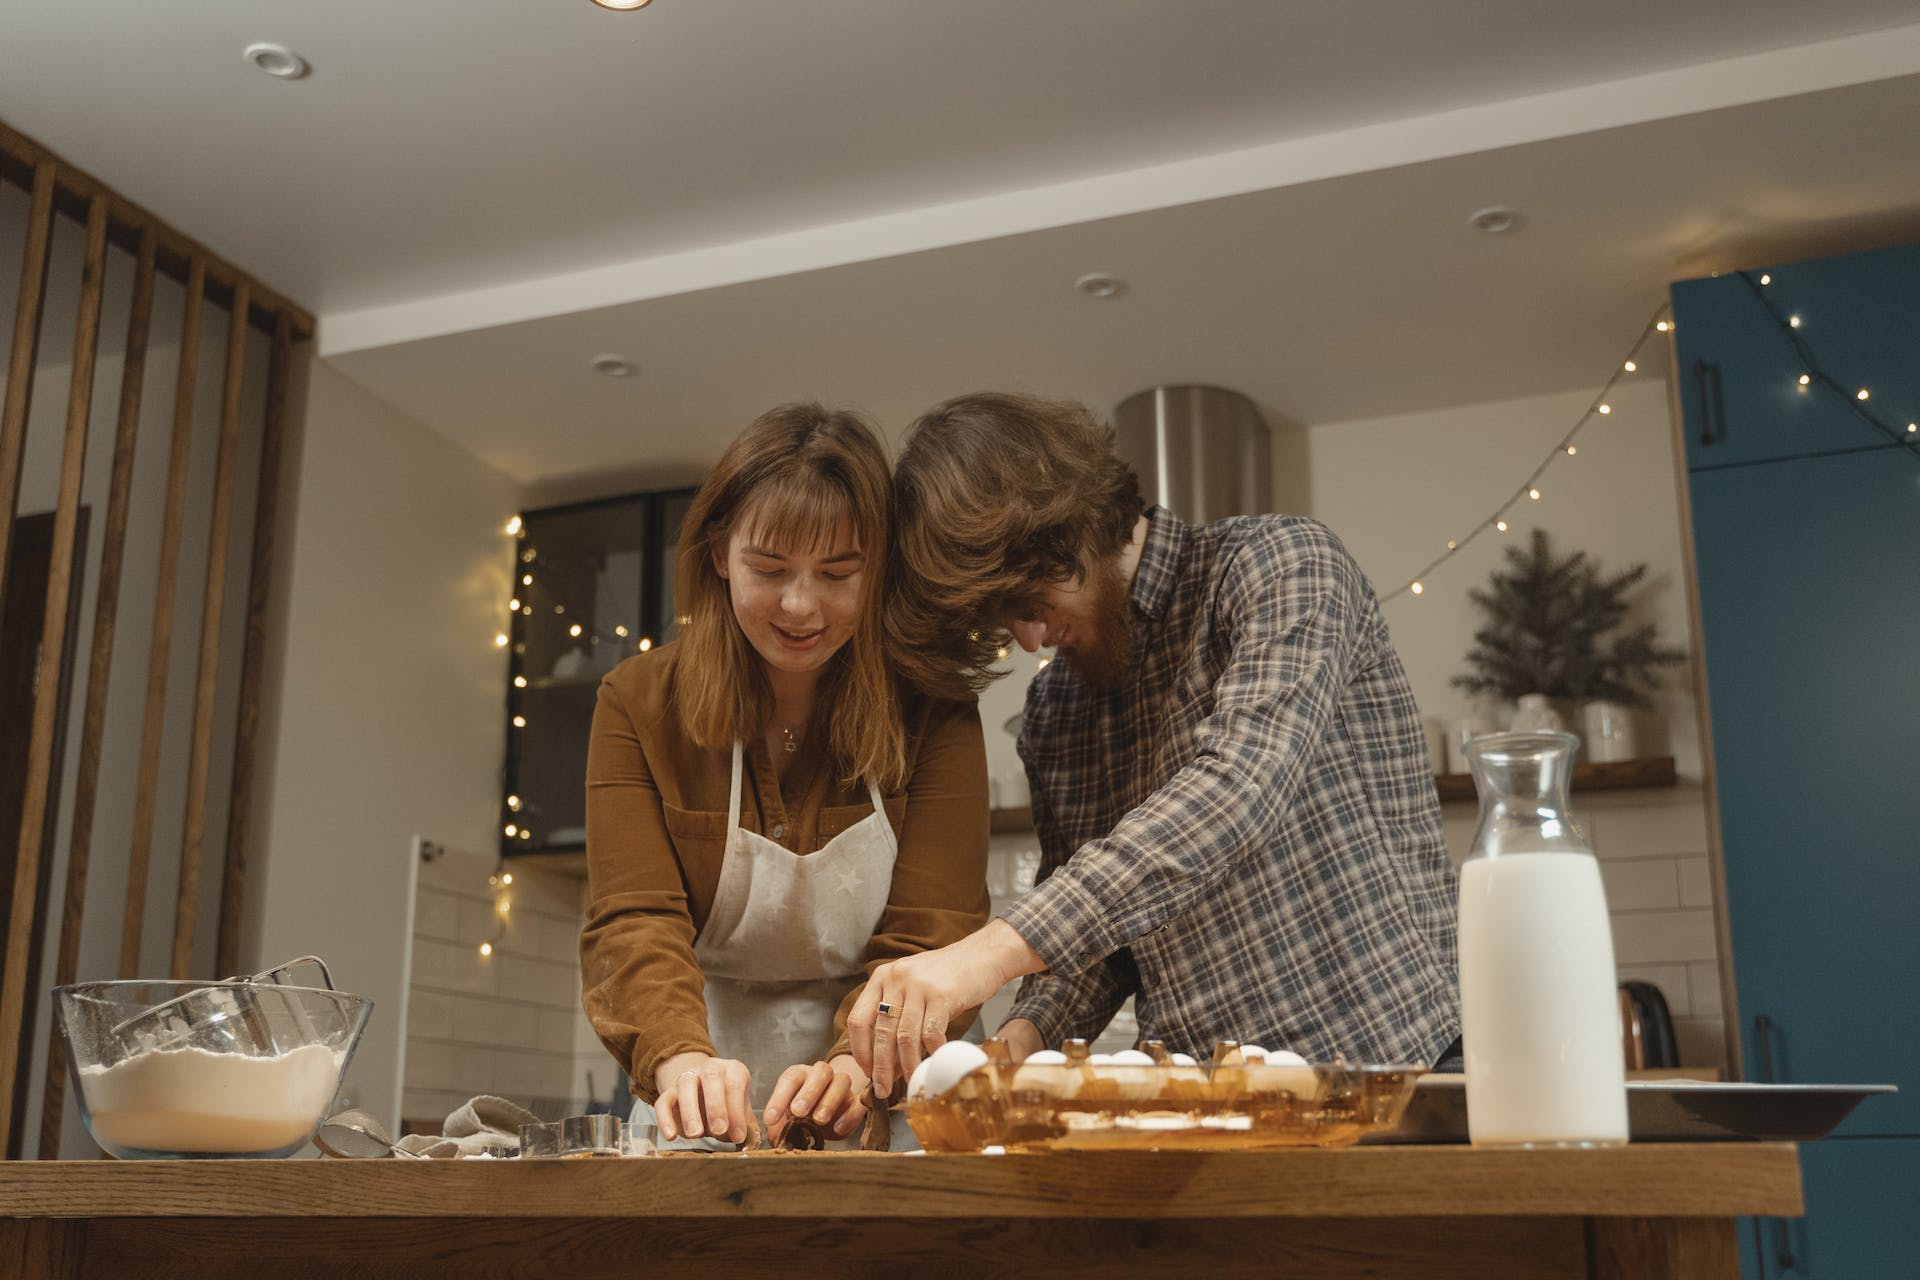 Un couple préparant des plats dans la cuisine pendant les fêtes de fin d'année | Source : Pexels